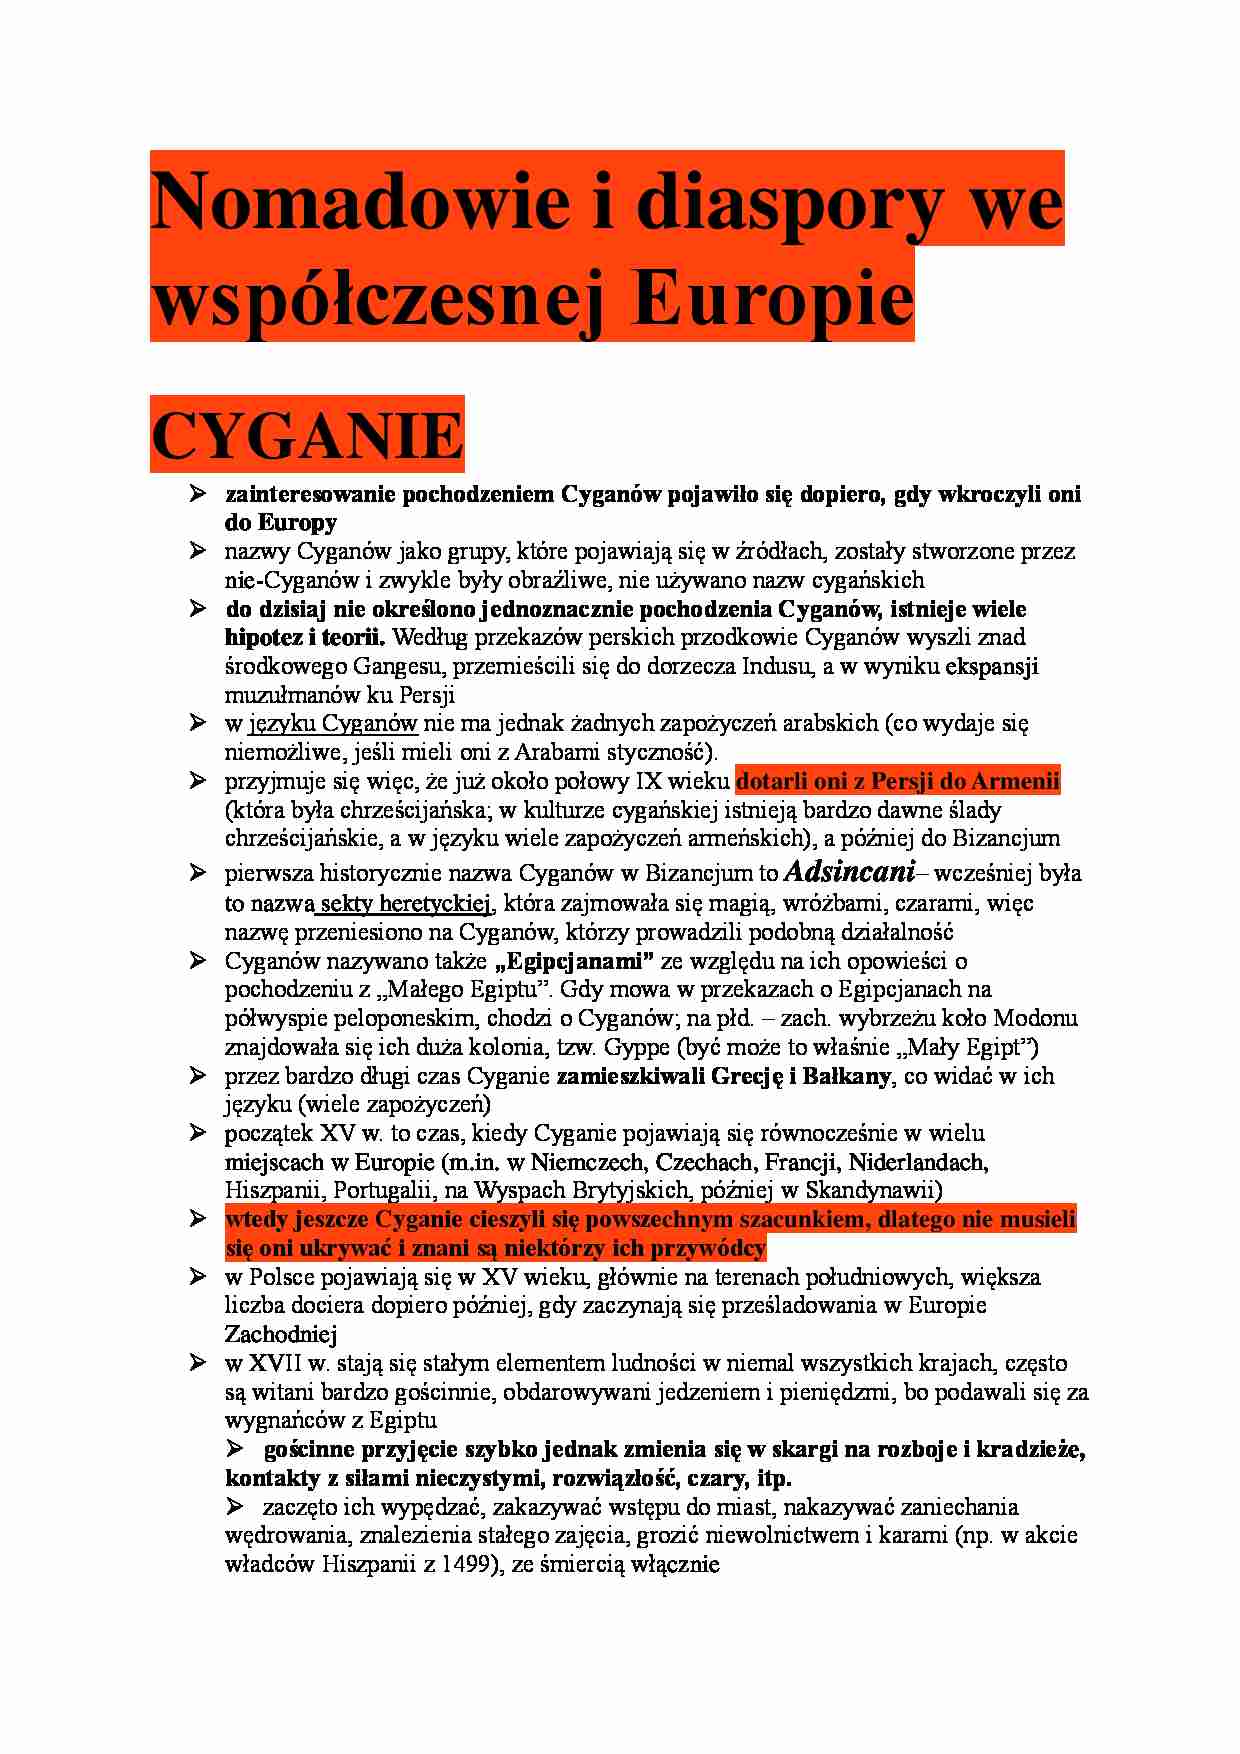 Nomadowie i diaspory we współczesnej Europie - strona 1